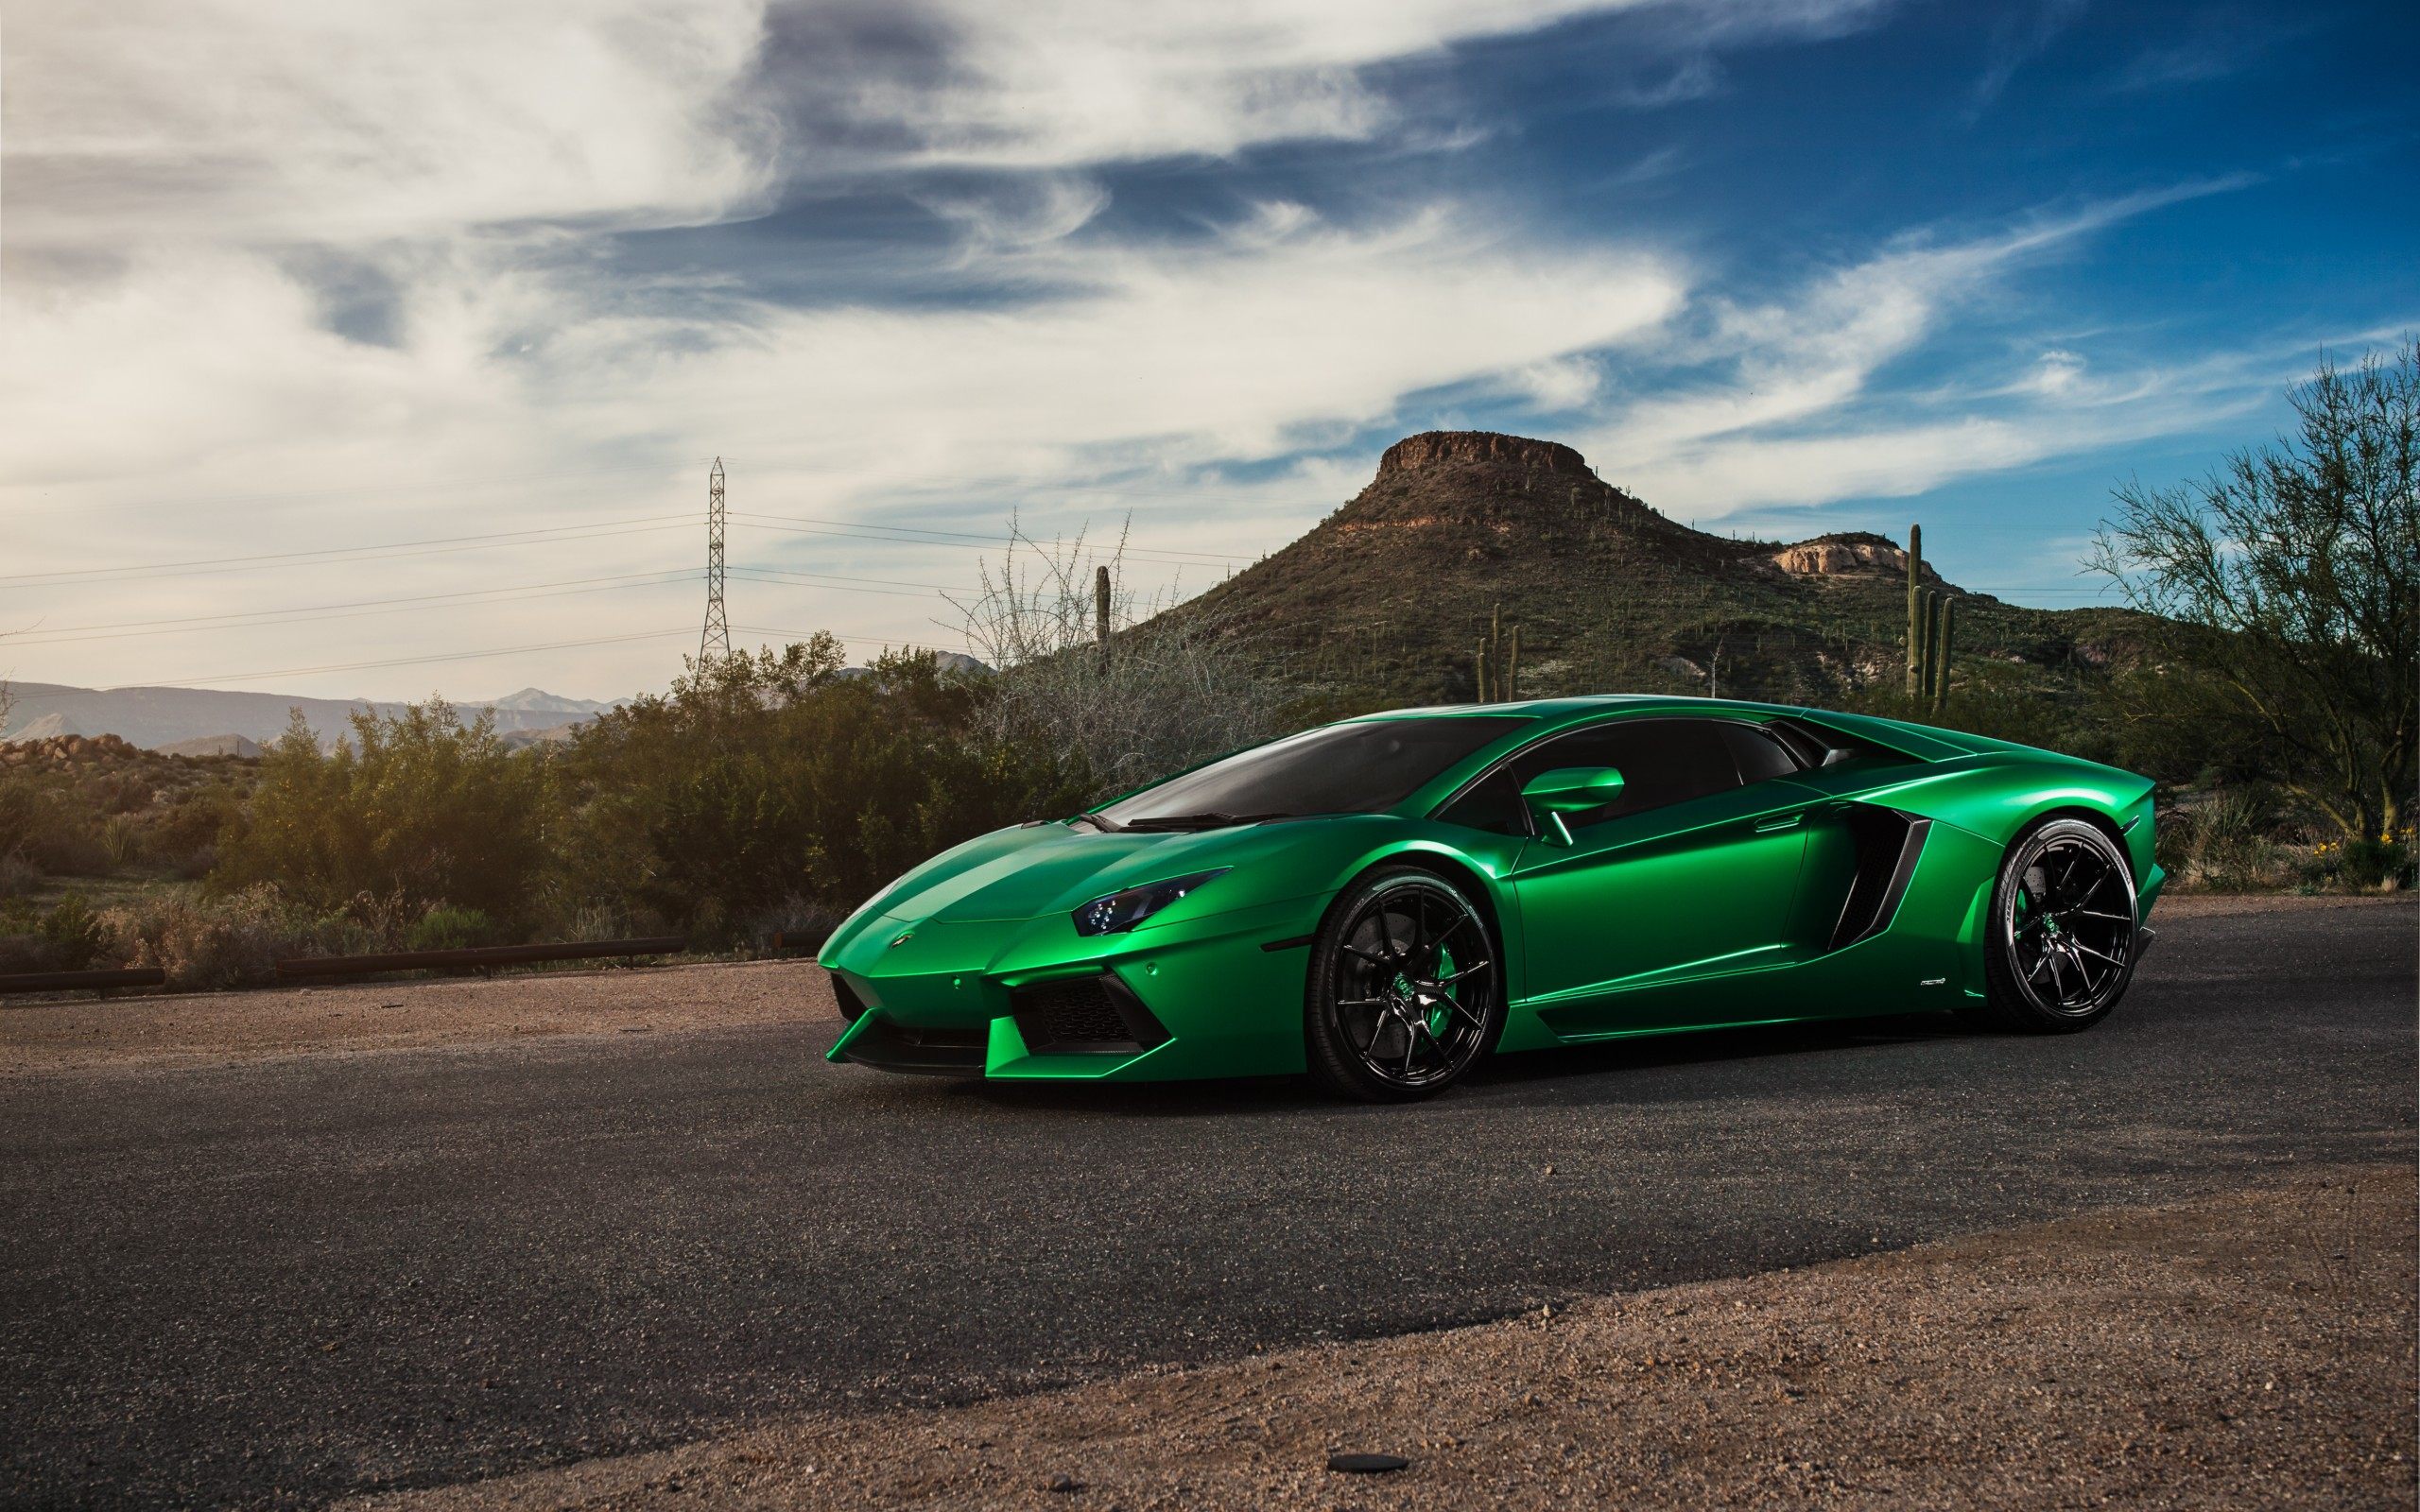 Green Lamborghini Supercar Wallpaper For Desktop amp Mobile 2560x1600